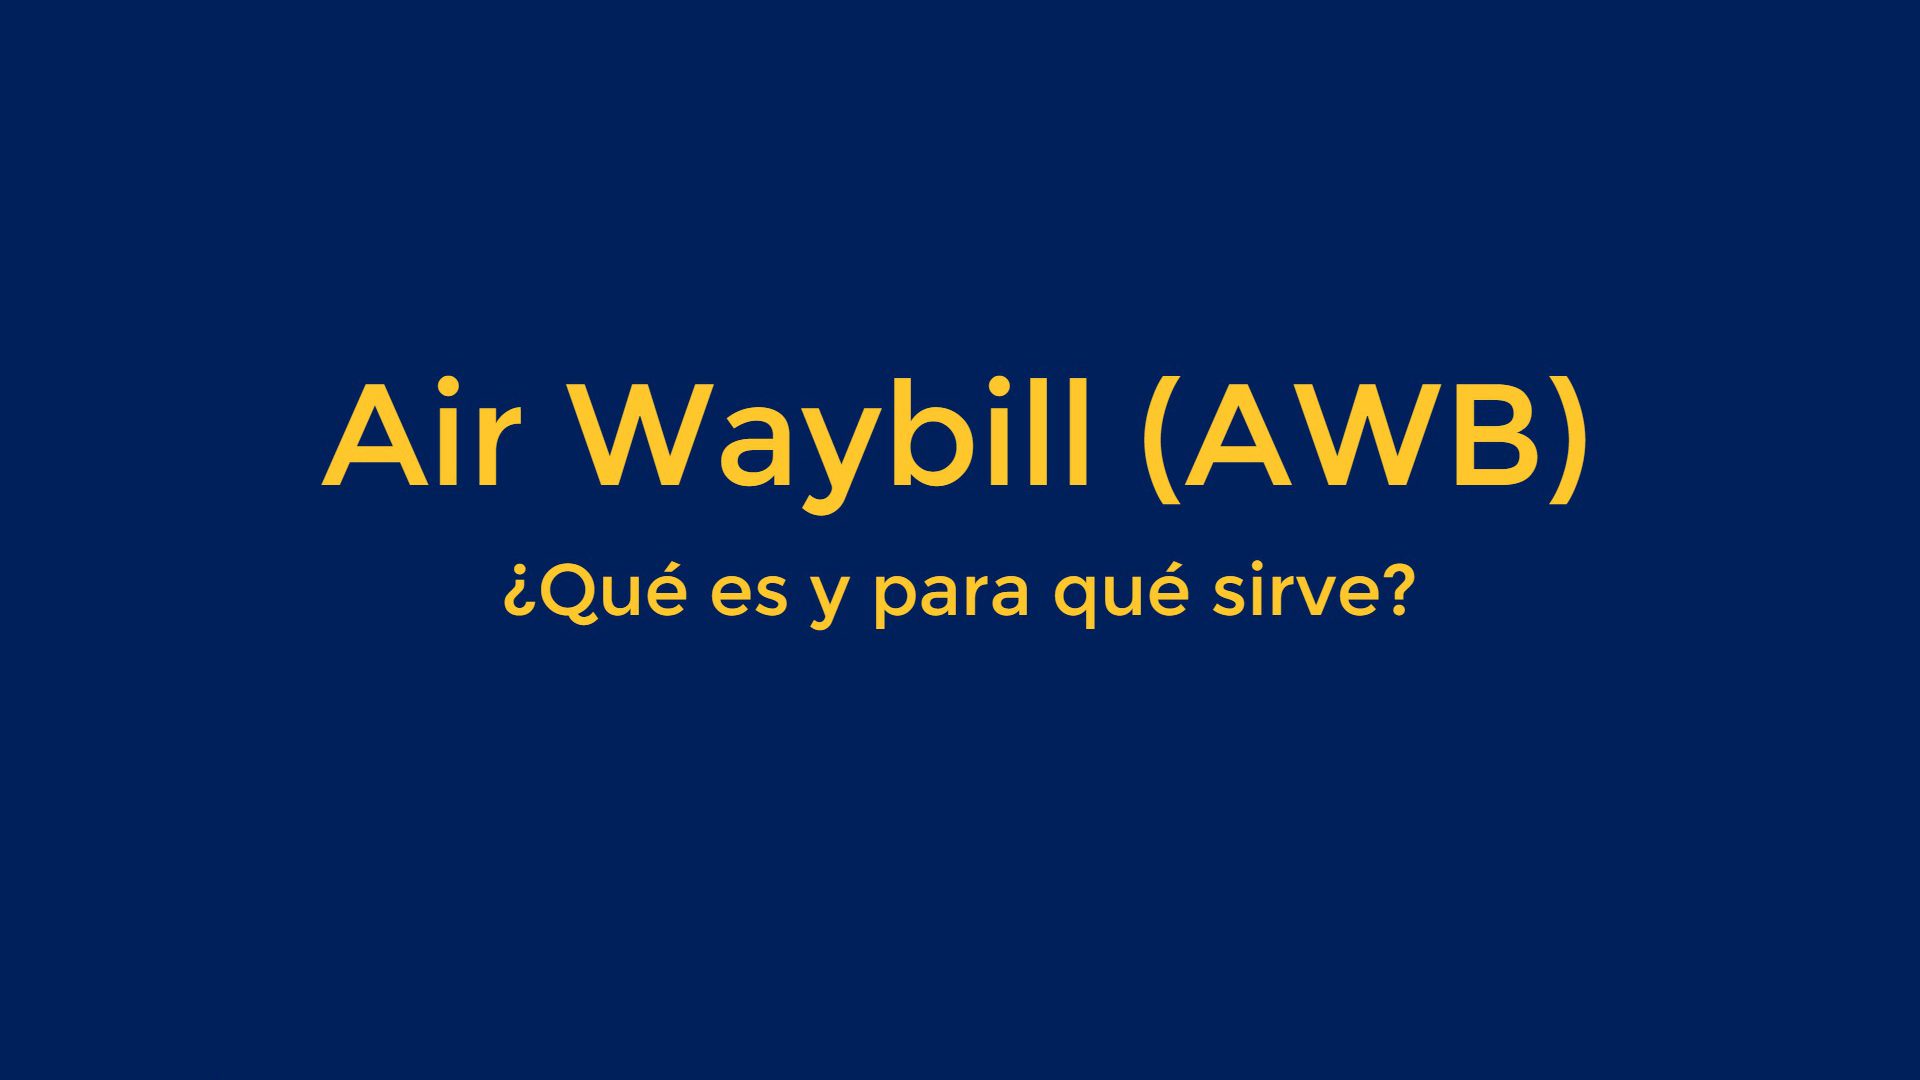 Air Waybill